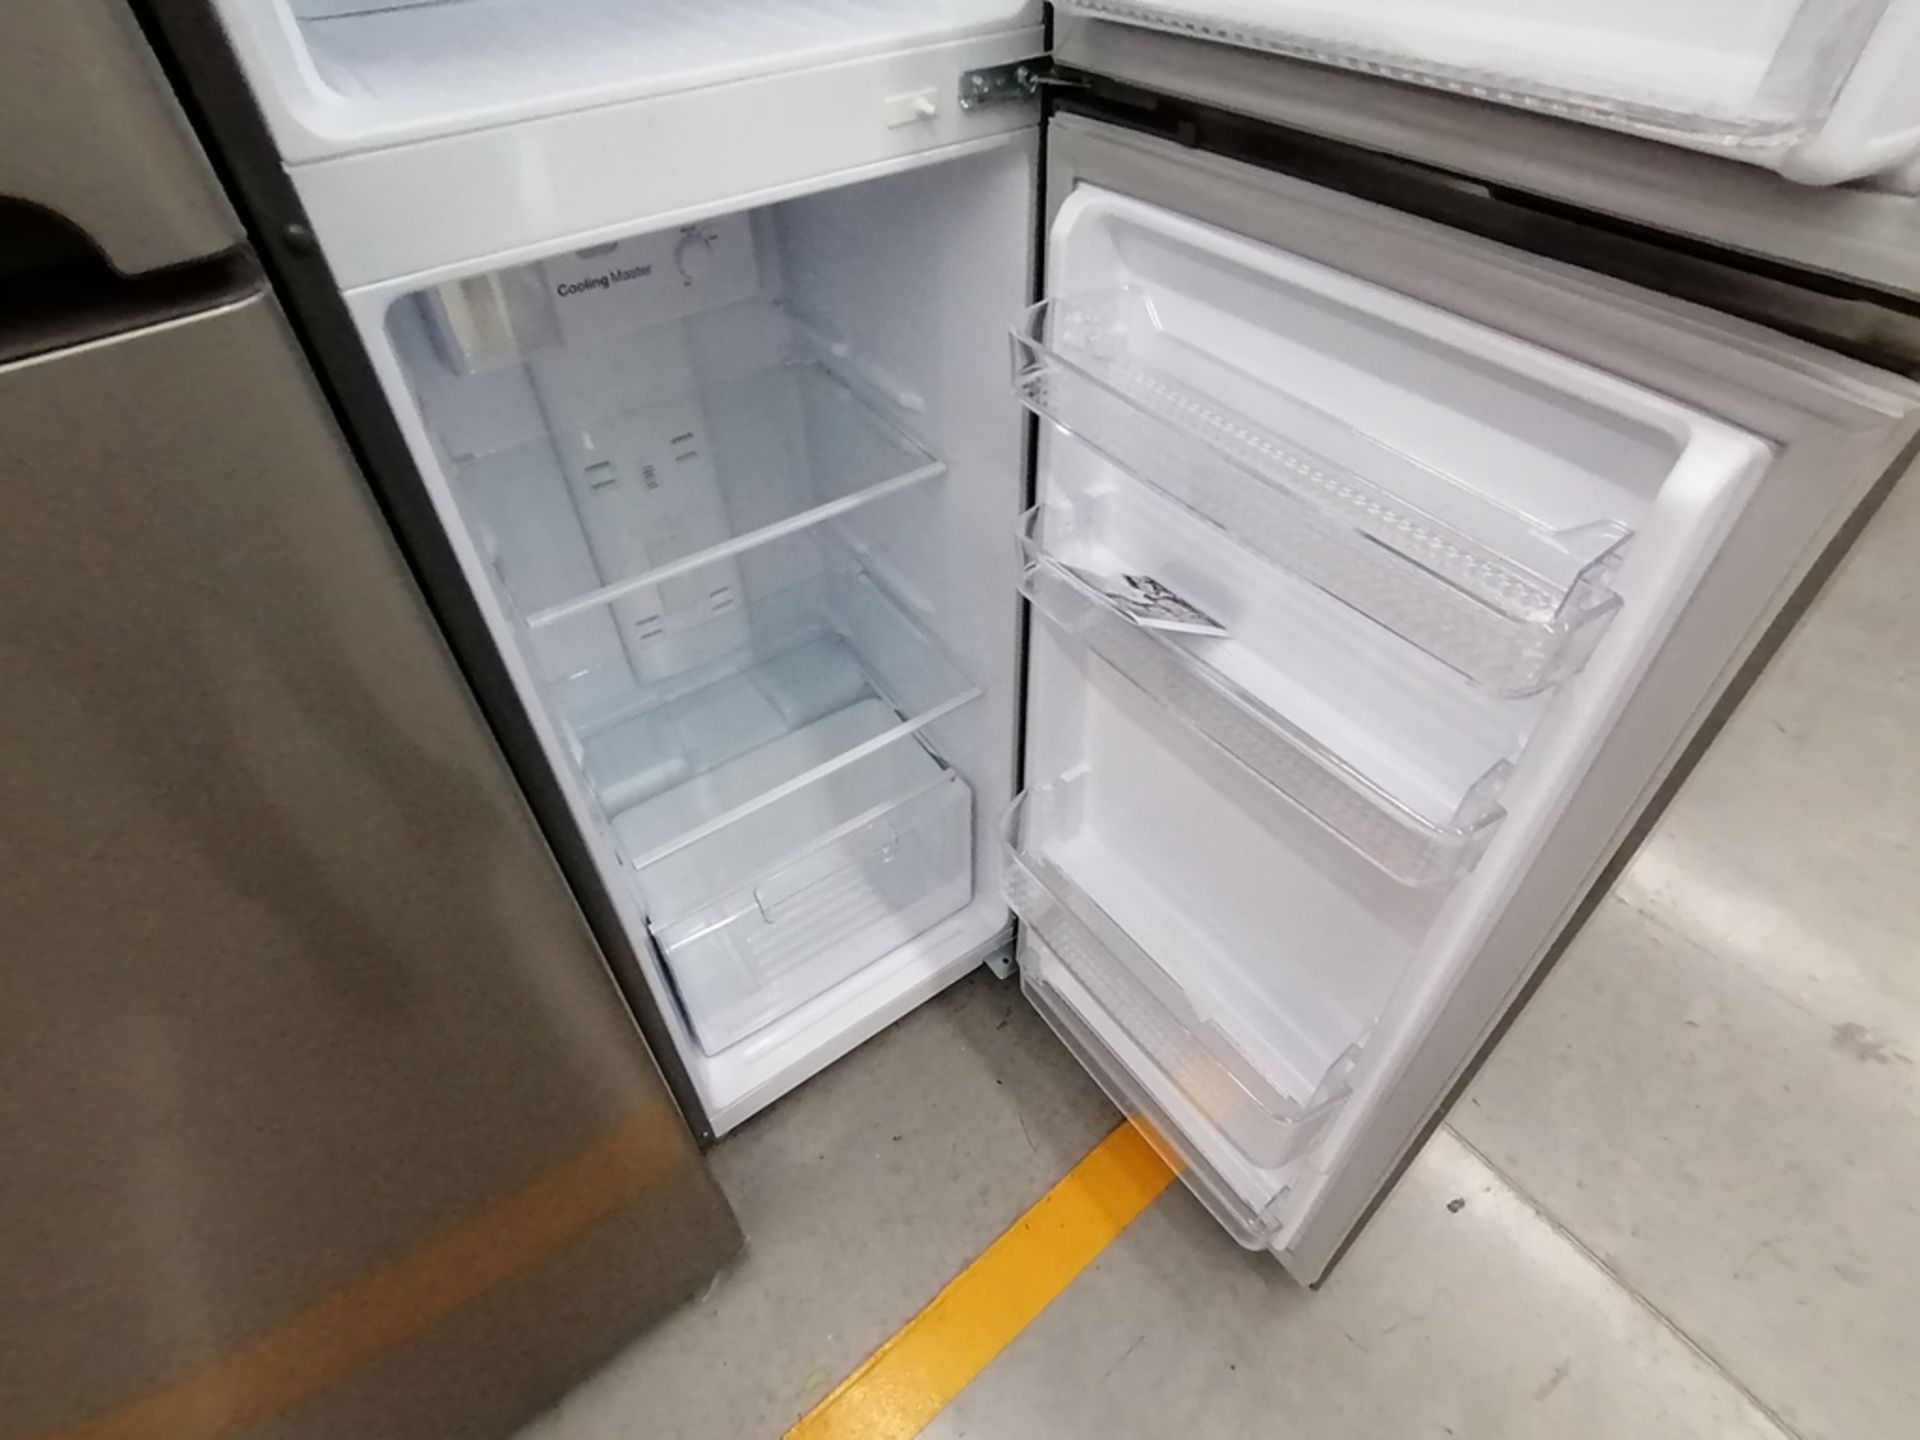 Lote de 2 refrigeradores incluye: 1 Refrigerador, Marca Winia, Modelo DFR25210GN, Serie MR219N11602 - Image 14 of 15